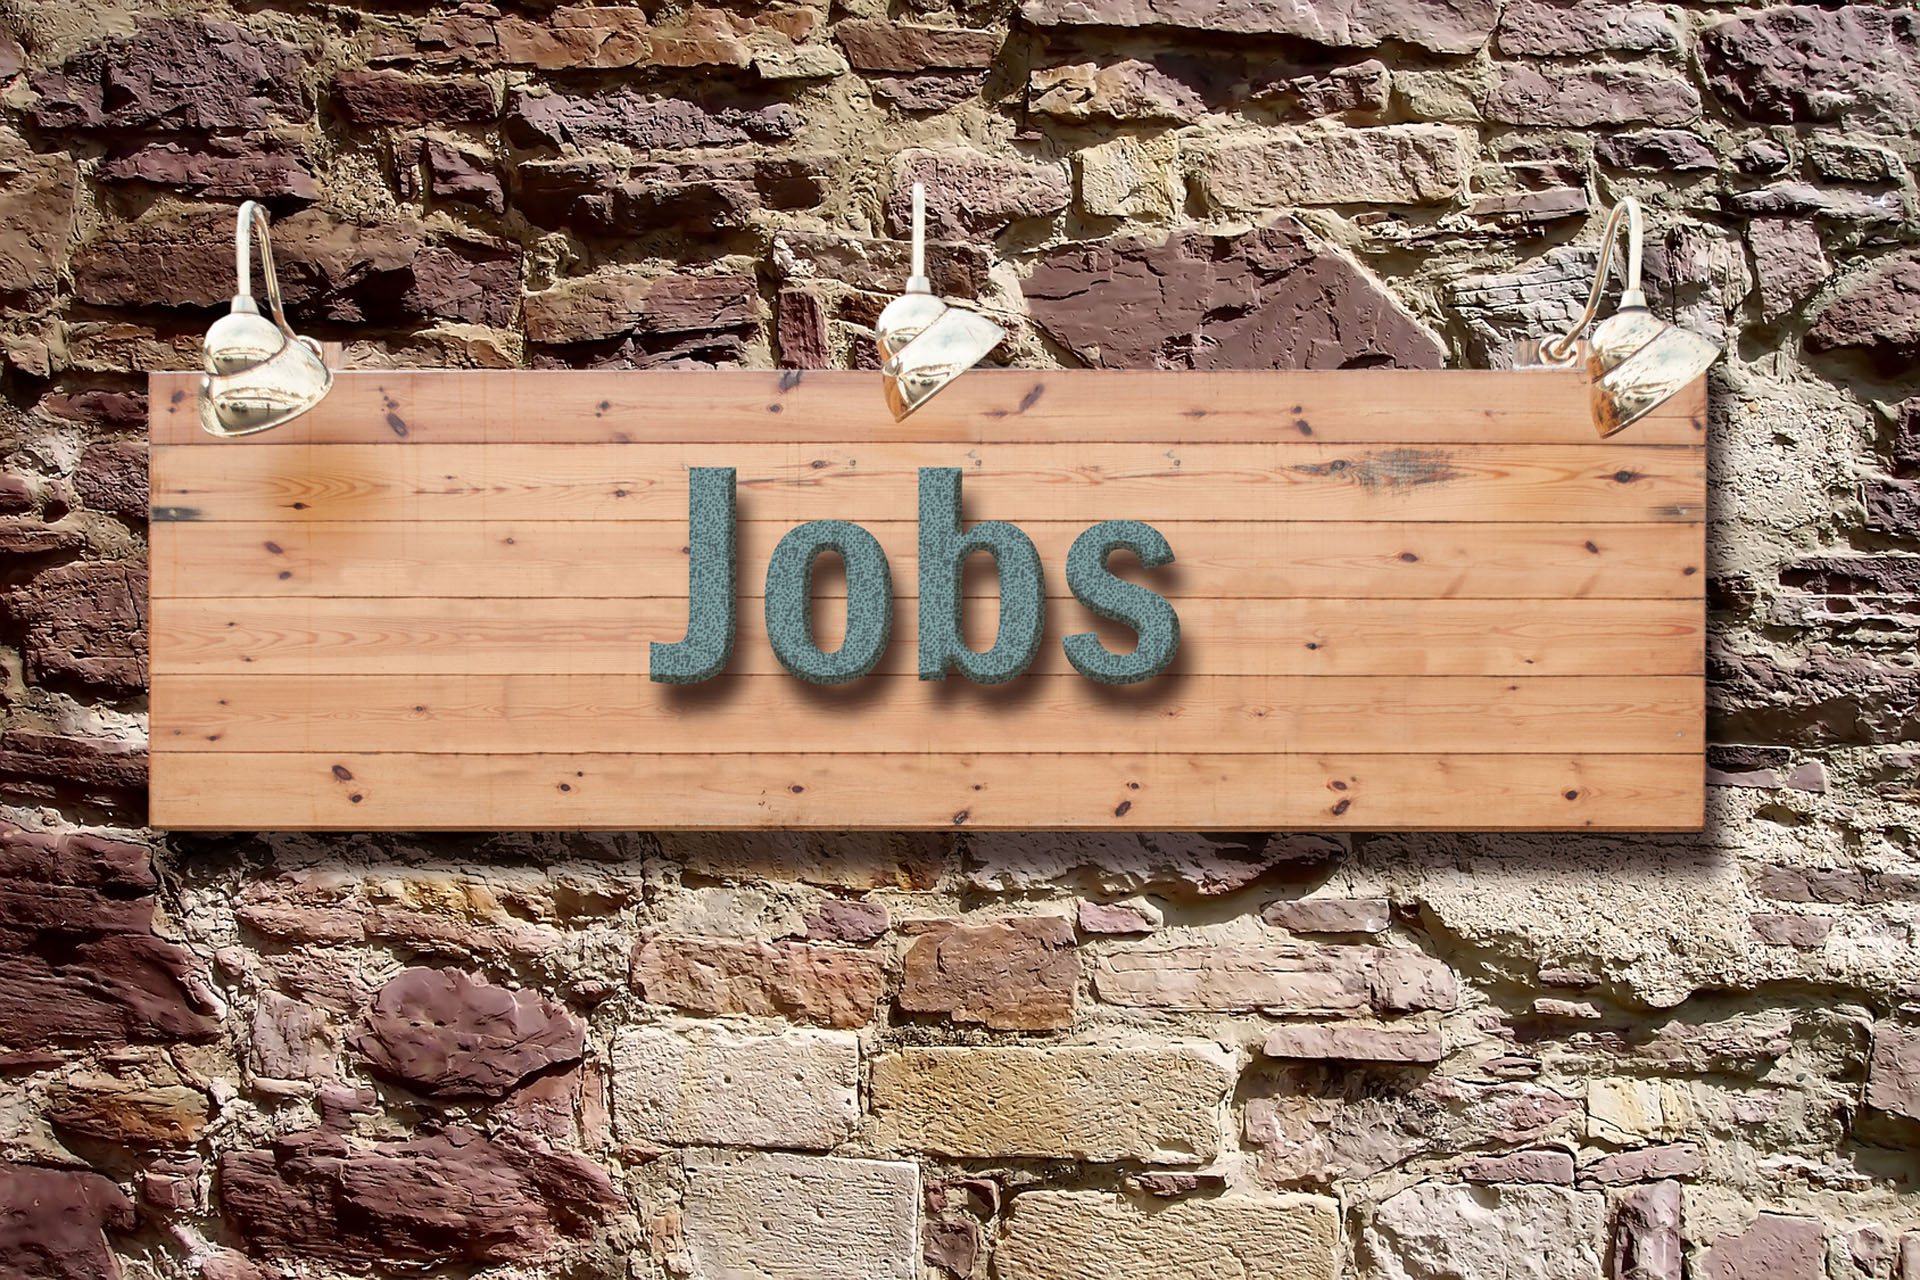 Holztafel an Wand mit Aufschrift "Jobs"